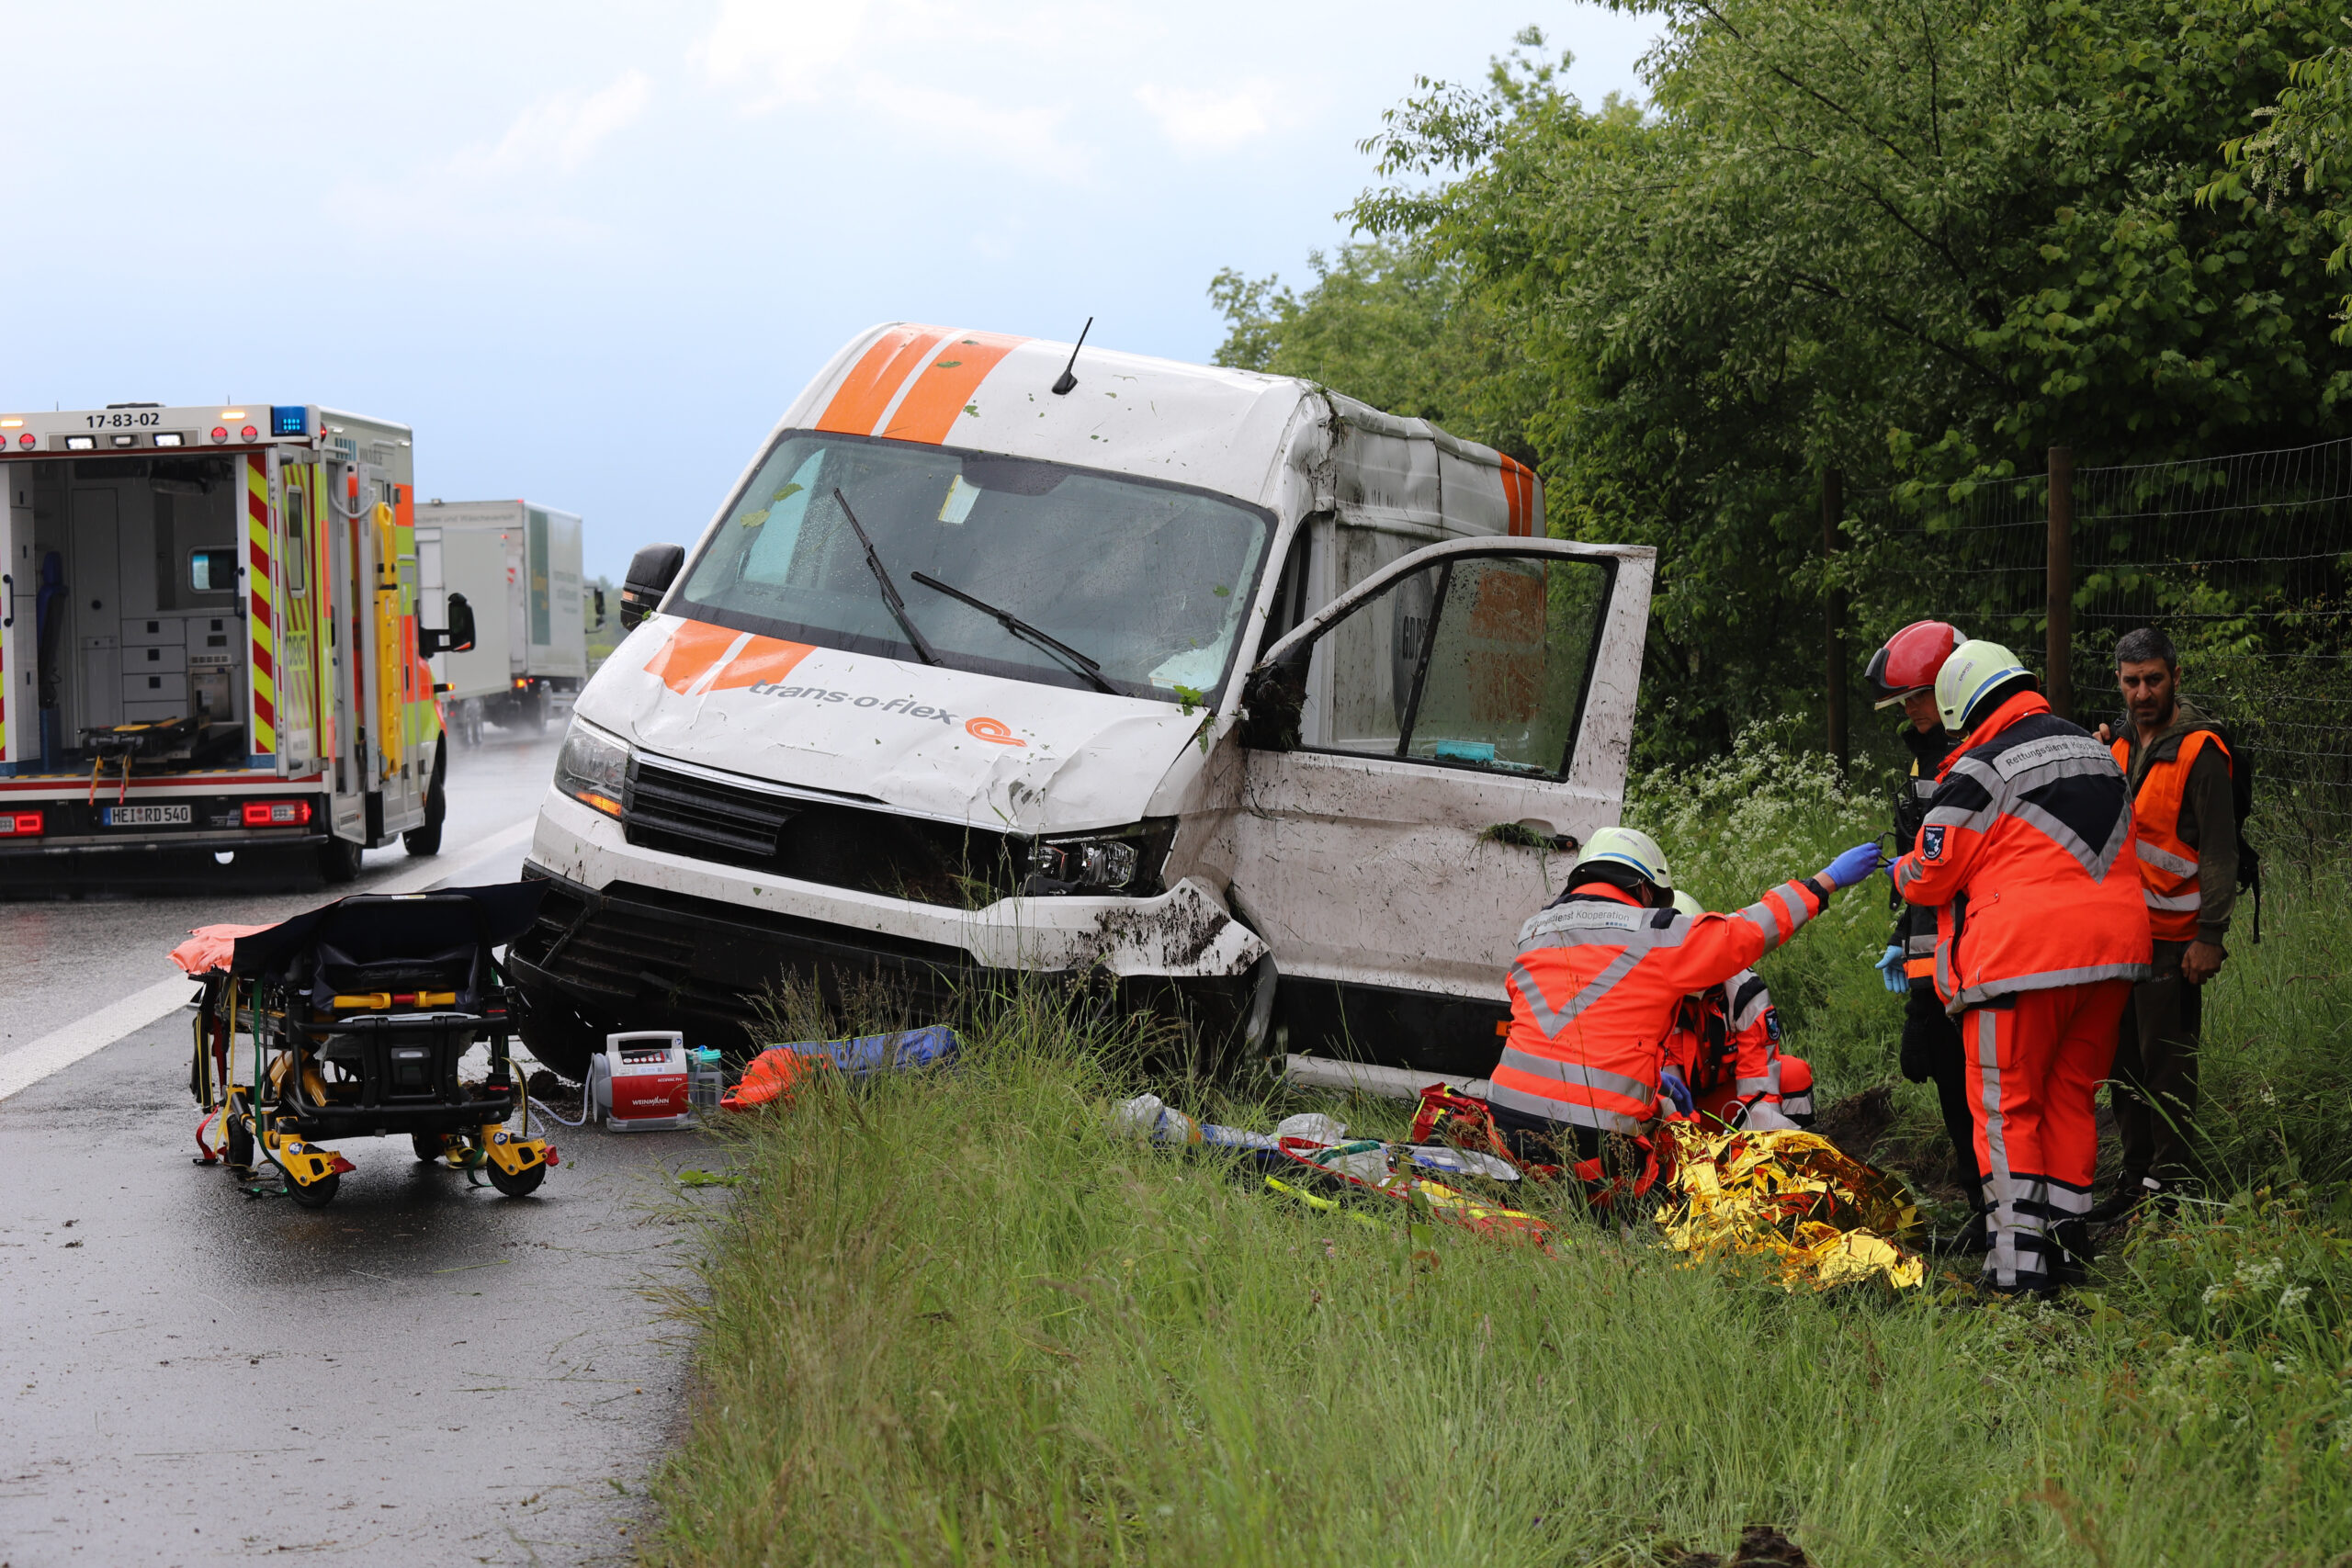 Unfall auf Autobahn nahe Hamburg - – zwei Personen schwer verletzt